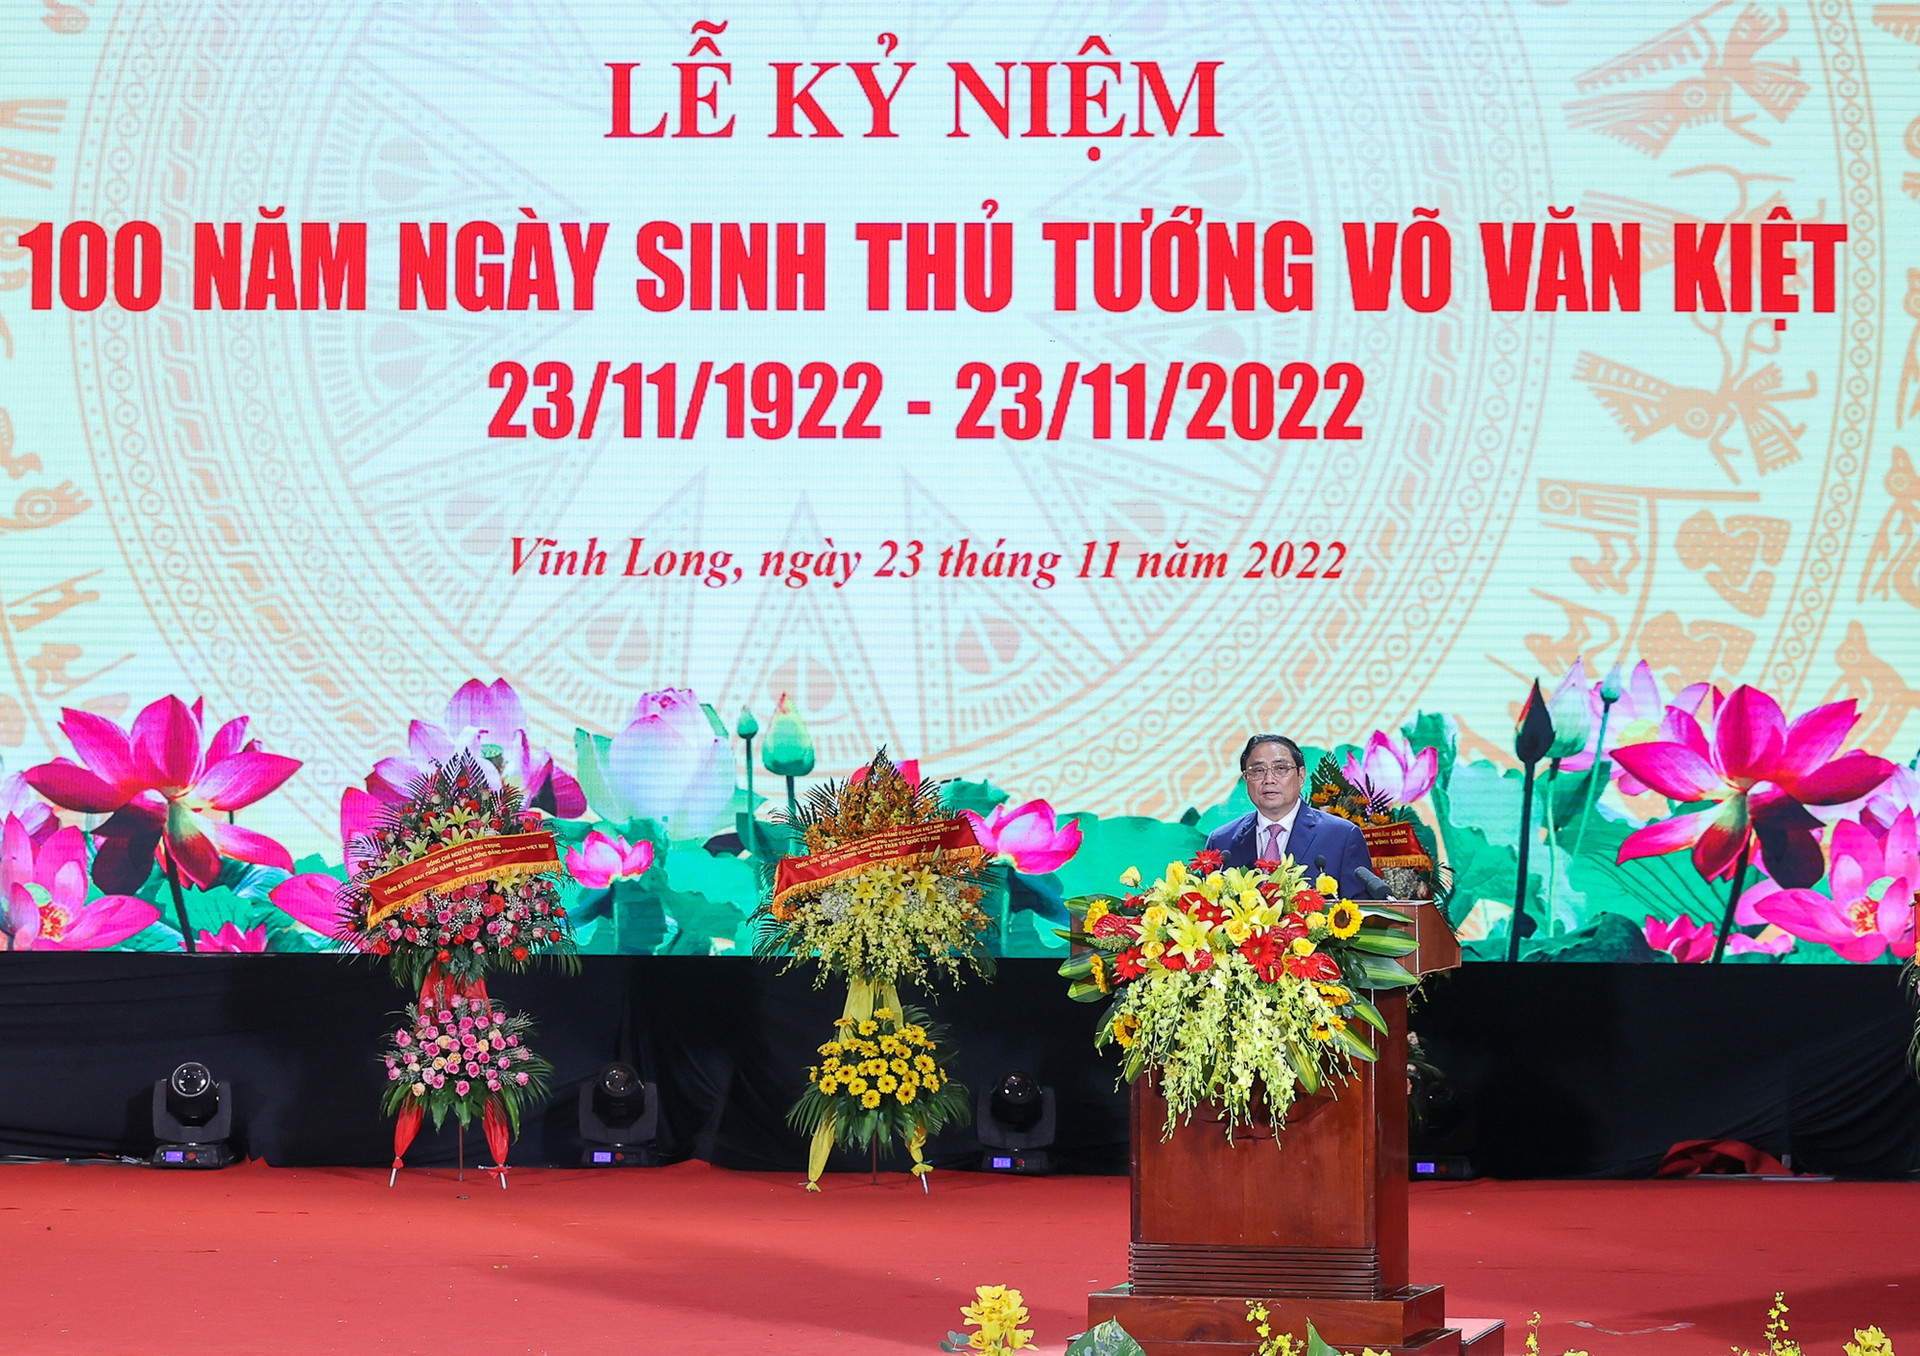 Đồng chí Võ Văn Kiệt là nhà lãnh đạo xuất sắc, trọn đời vì nước, vì dân - Ảnh 3.